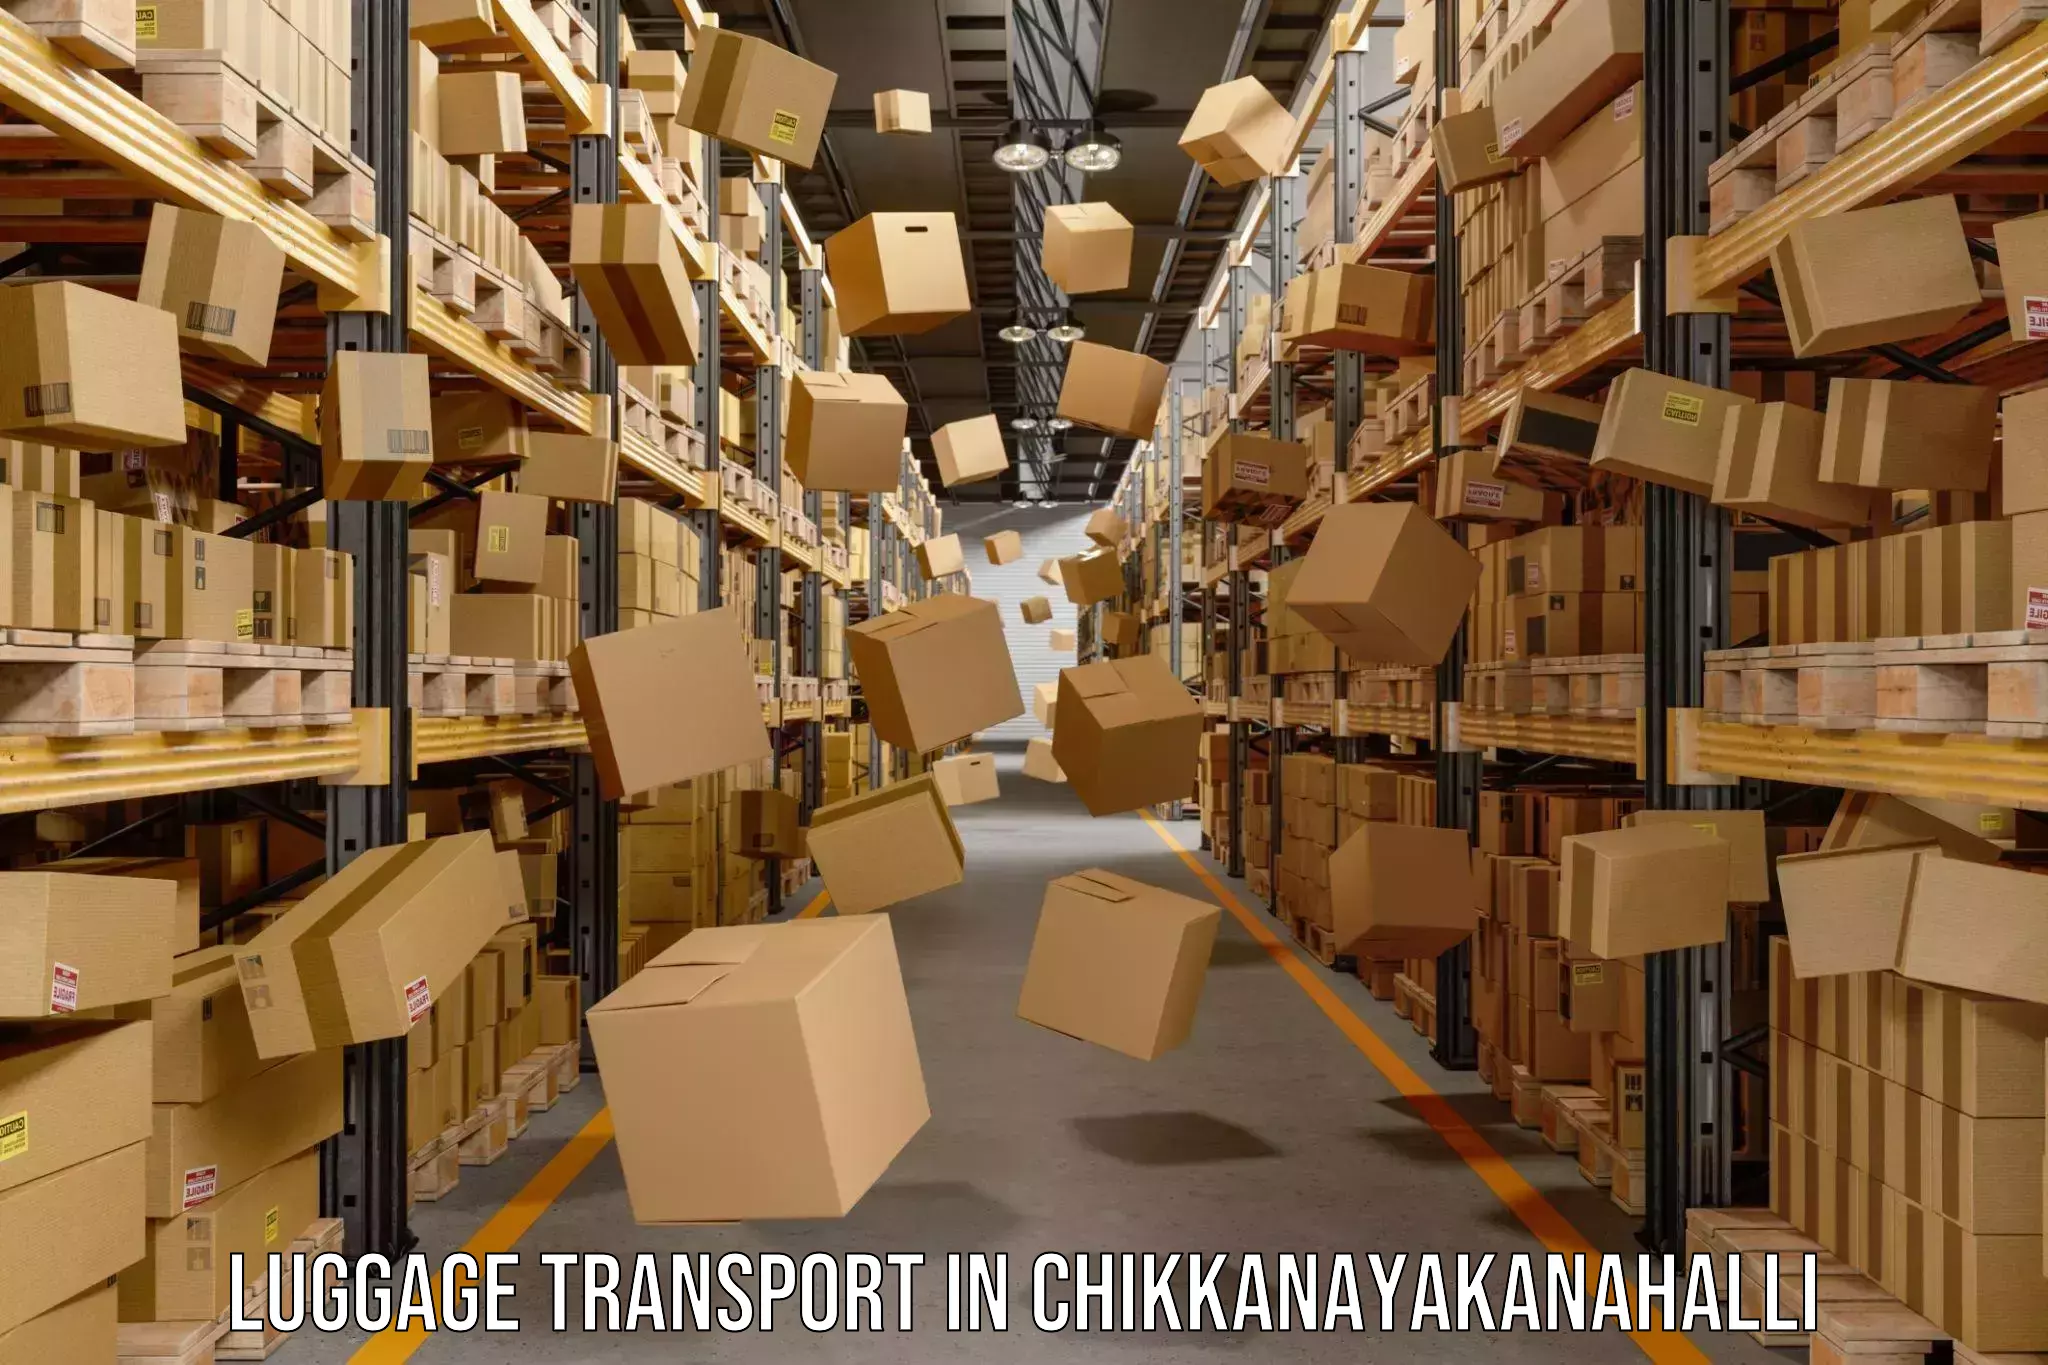 Luggage shipment tracking in Chikkanayakanahalli